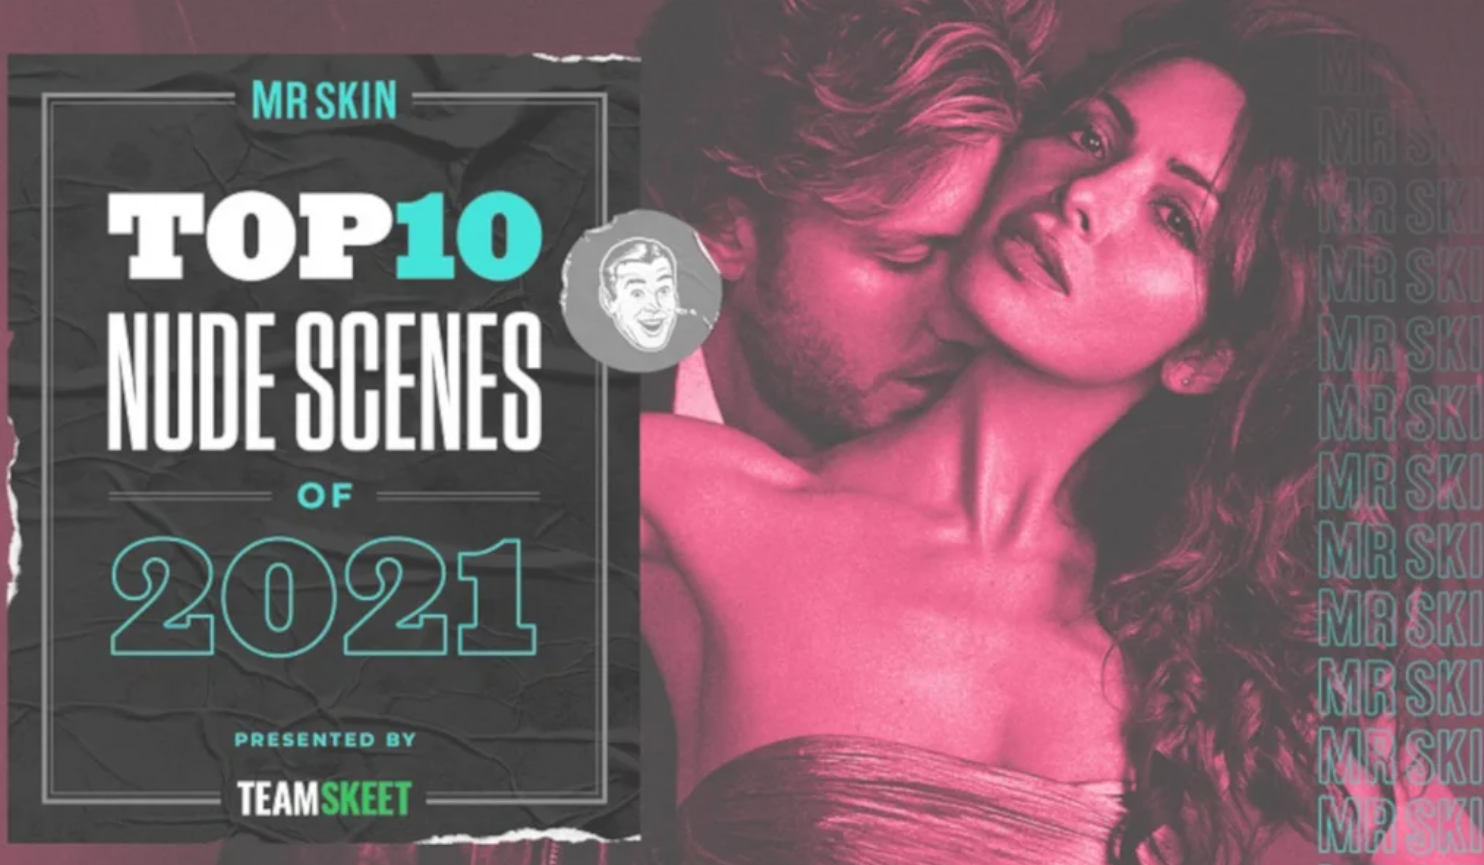 Mr. Skin Reveals Top 10 Nude Scenes of 2021